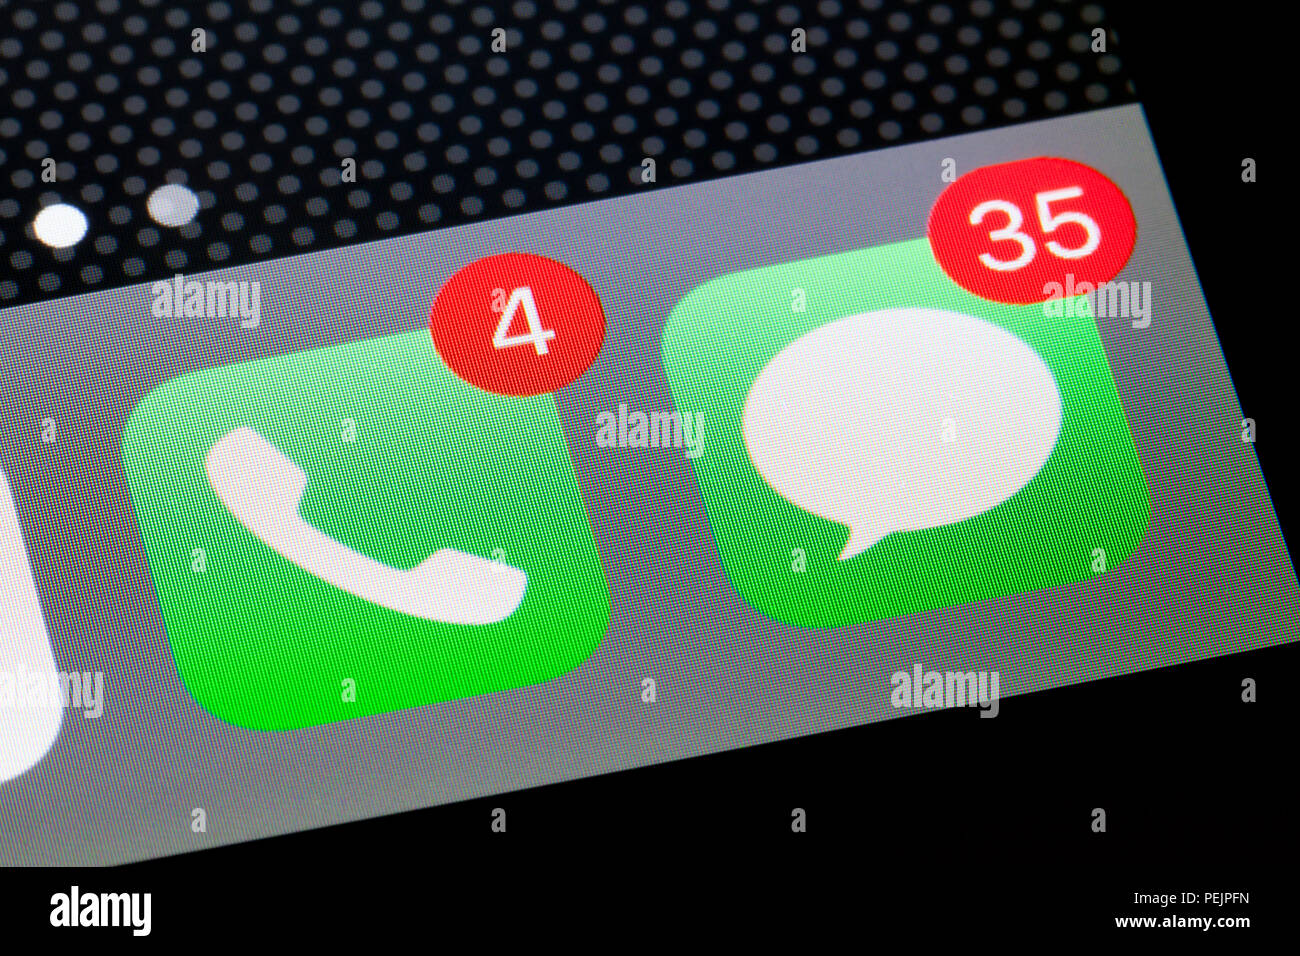 Téléphone de l'iPhone et les messages de notification des appels en absence d'icônes montrant un insigne (badges) - USA Banque D'Images